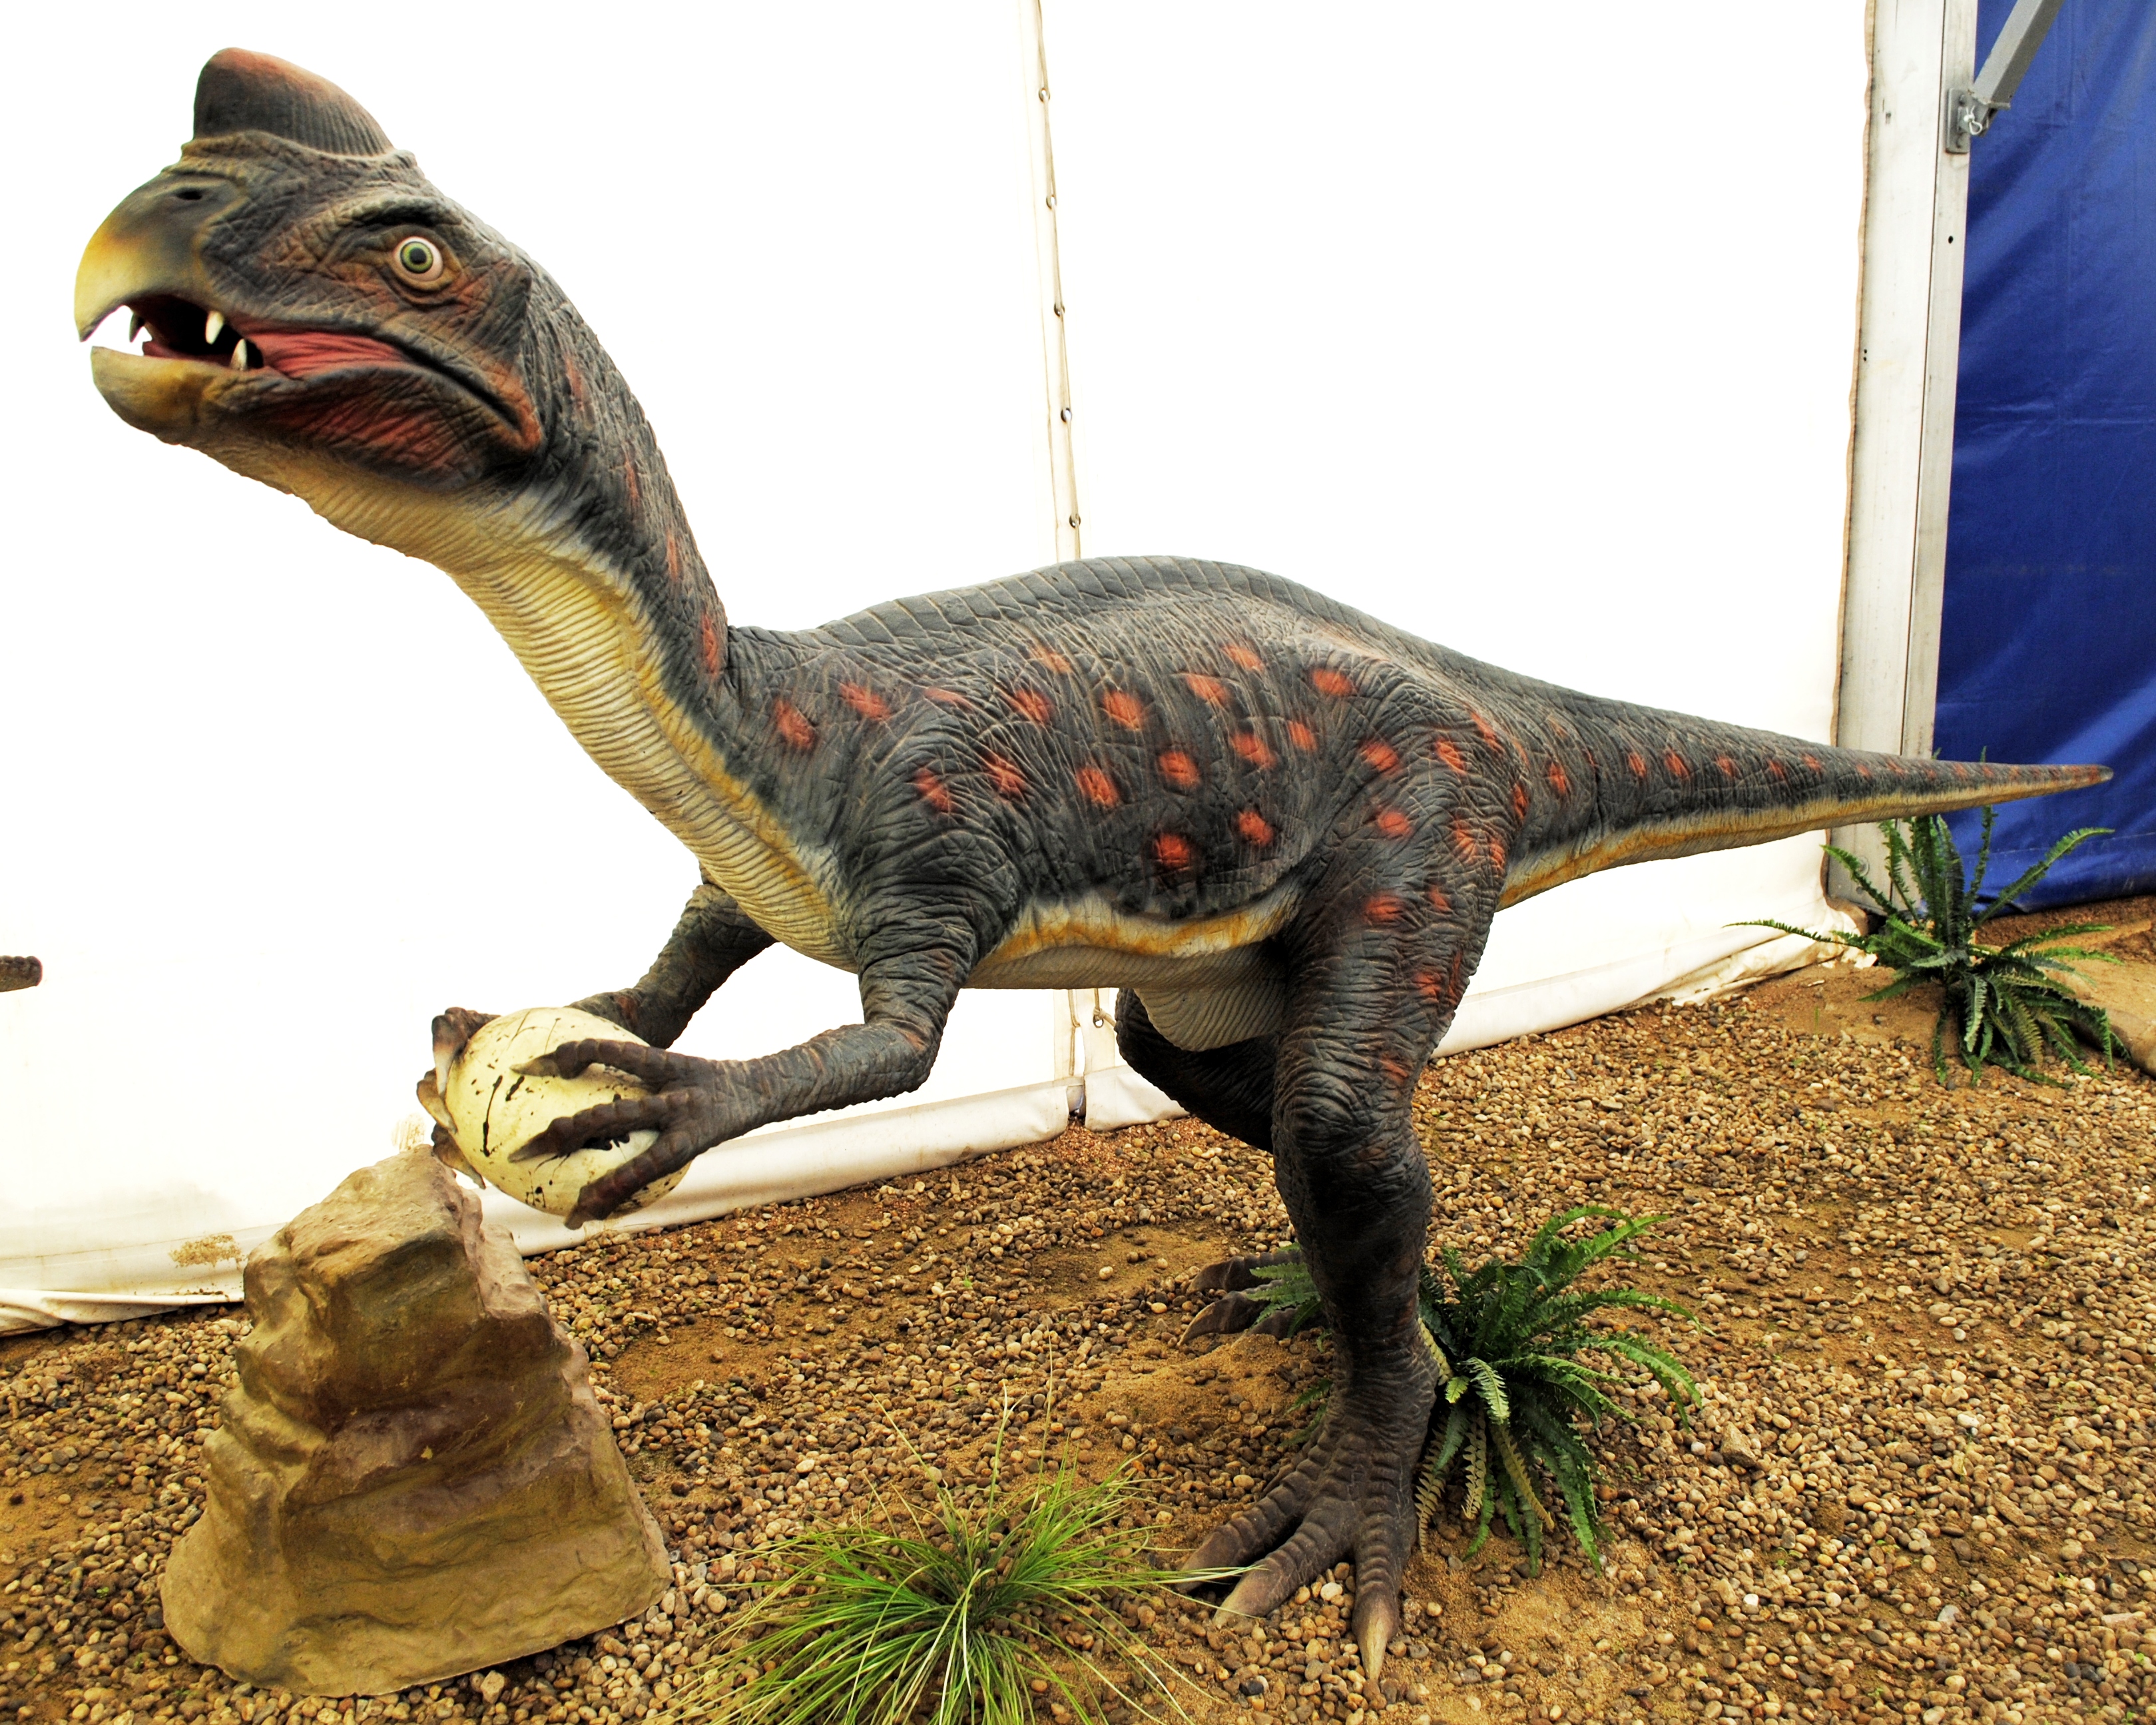 L'équipe a travaillé sur deux espèces très différentes dont un oviraptoridé. Dans cette famille de dinosaures, on avait une bouche édentée, des os creux, des jambes puissantes et trois longs doigts crochus. Proches des oiseaux, ces animaux devaient être très actifs. © HombreDHojalata